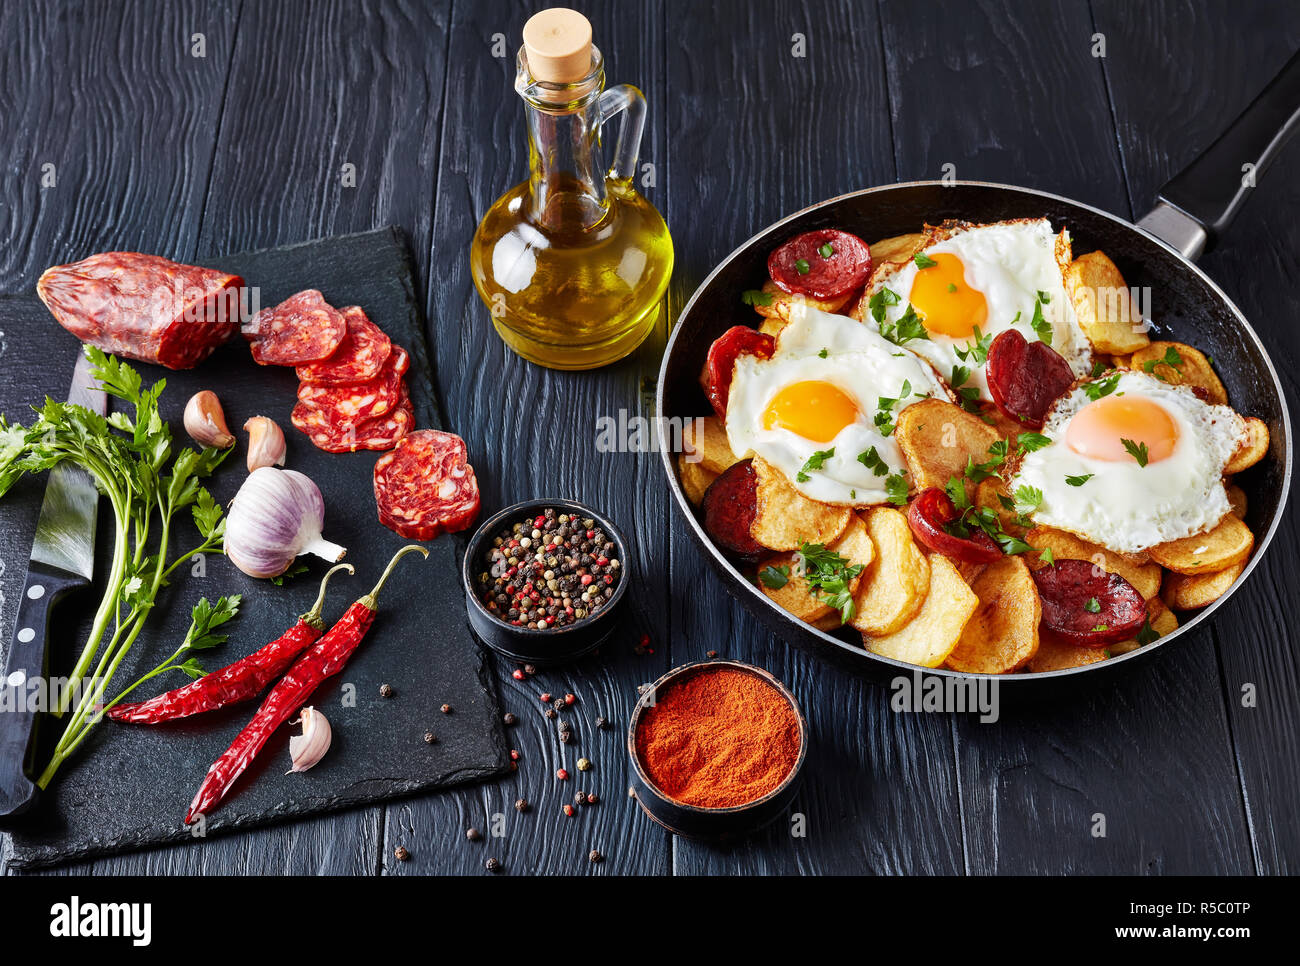 Traditionelle spanische Huevos rotos oder Huevos estrellados - gebratene Eier mit Kartoffeln, Würstchen Chorizo in einer Pfanne auf einem schwarzen Holztisch mit Ingr Stockfoto